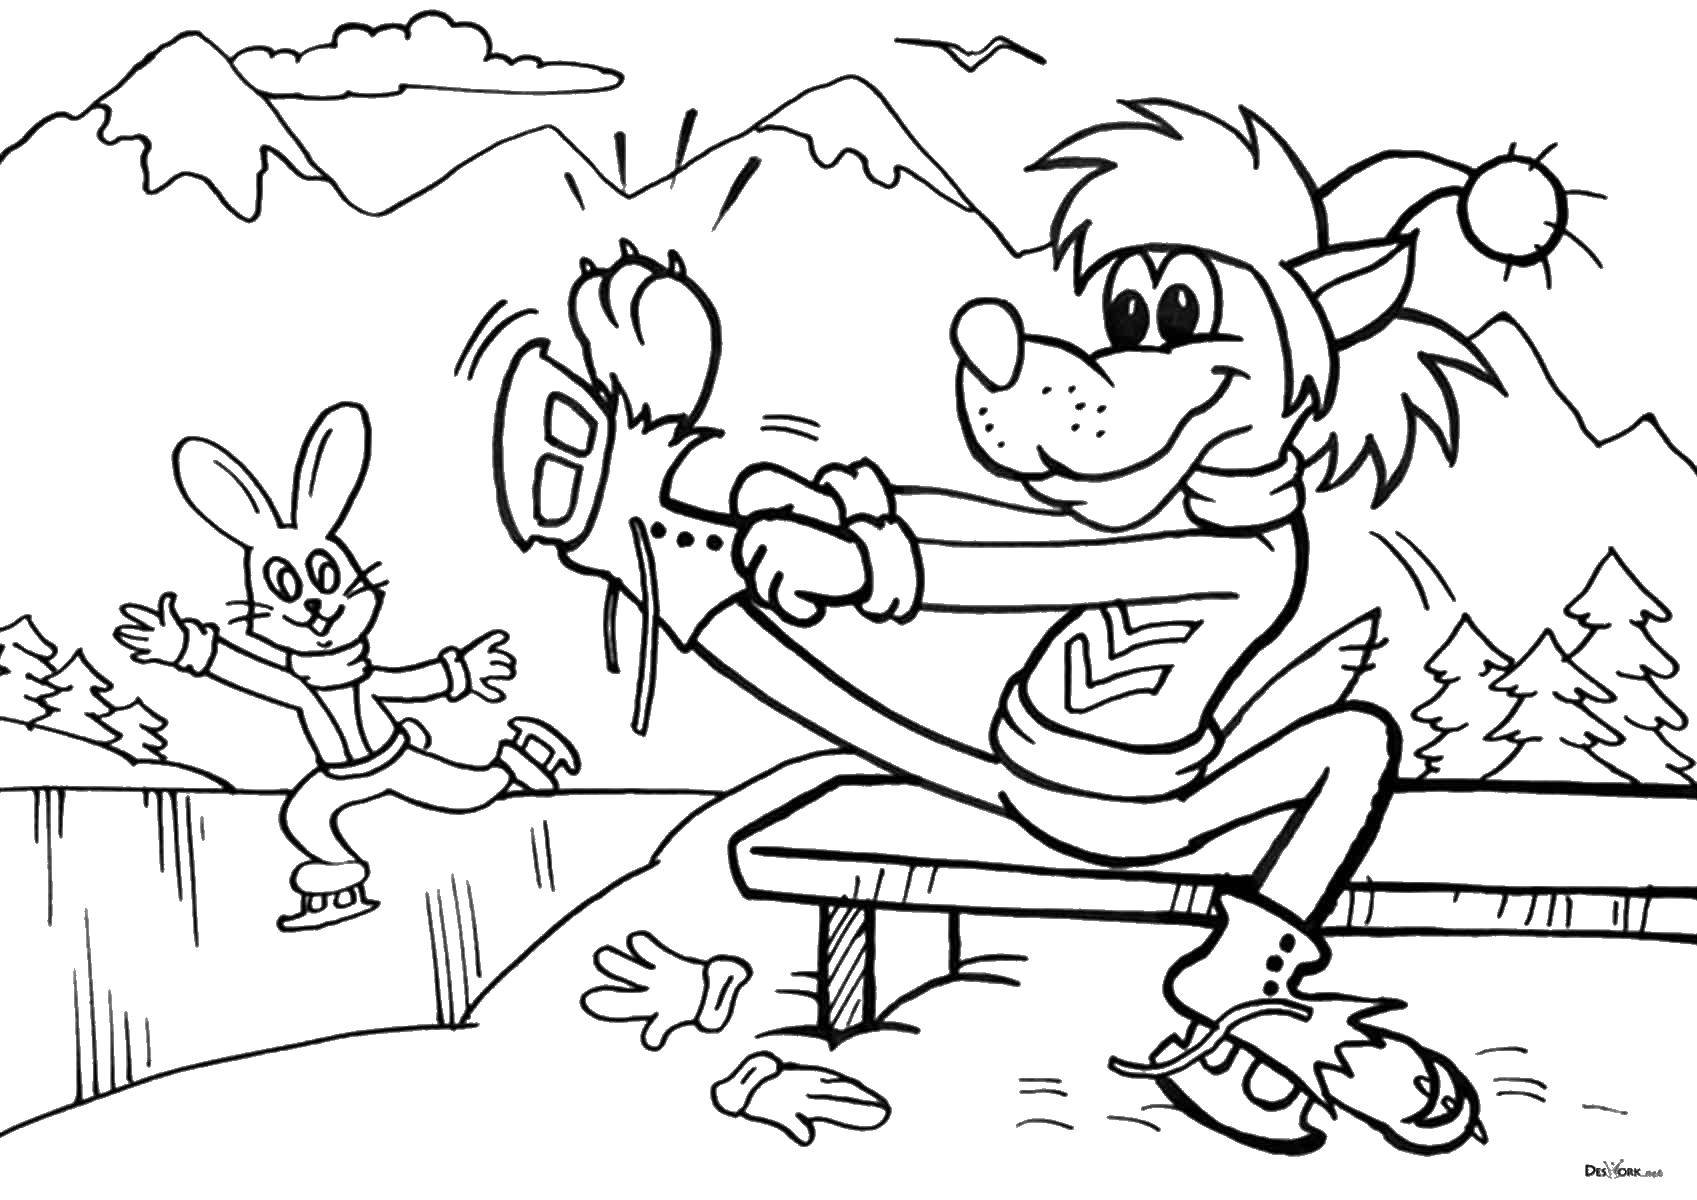 Раскраски к мультфильму Ну погоди, раскраски про волка и зайца для детей  Волк и заяц на катке